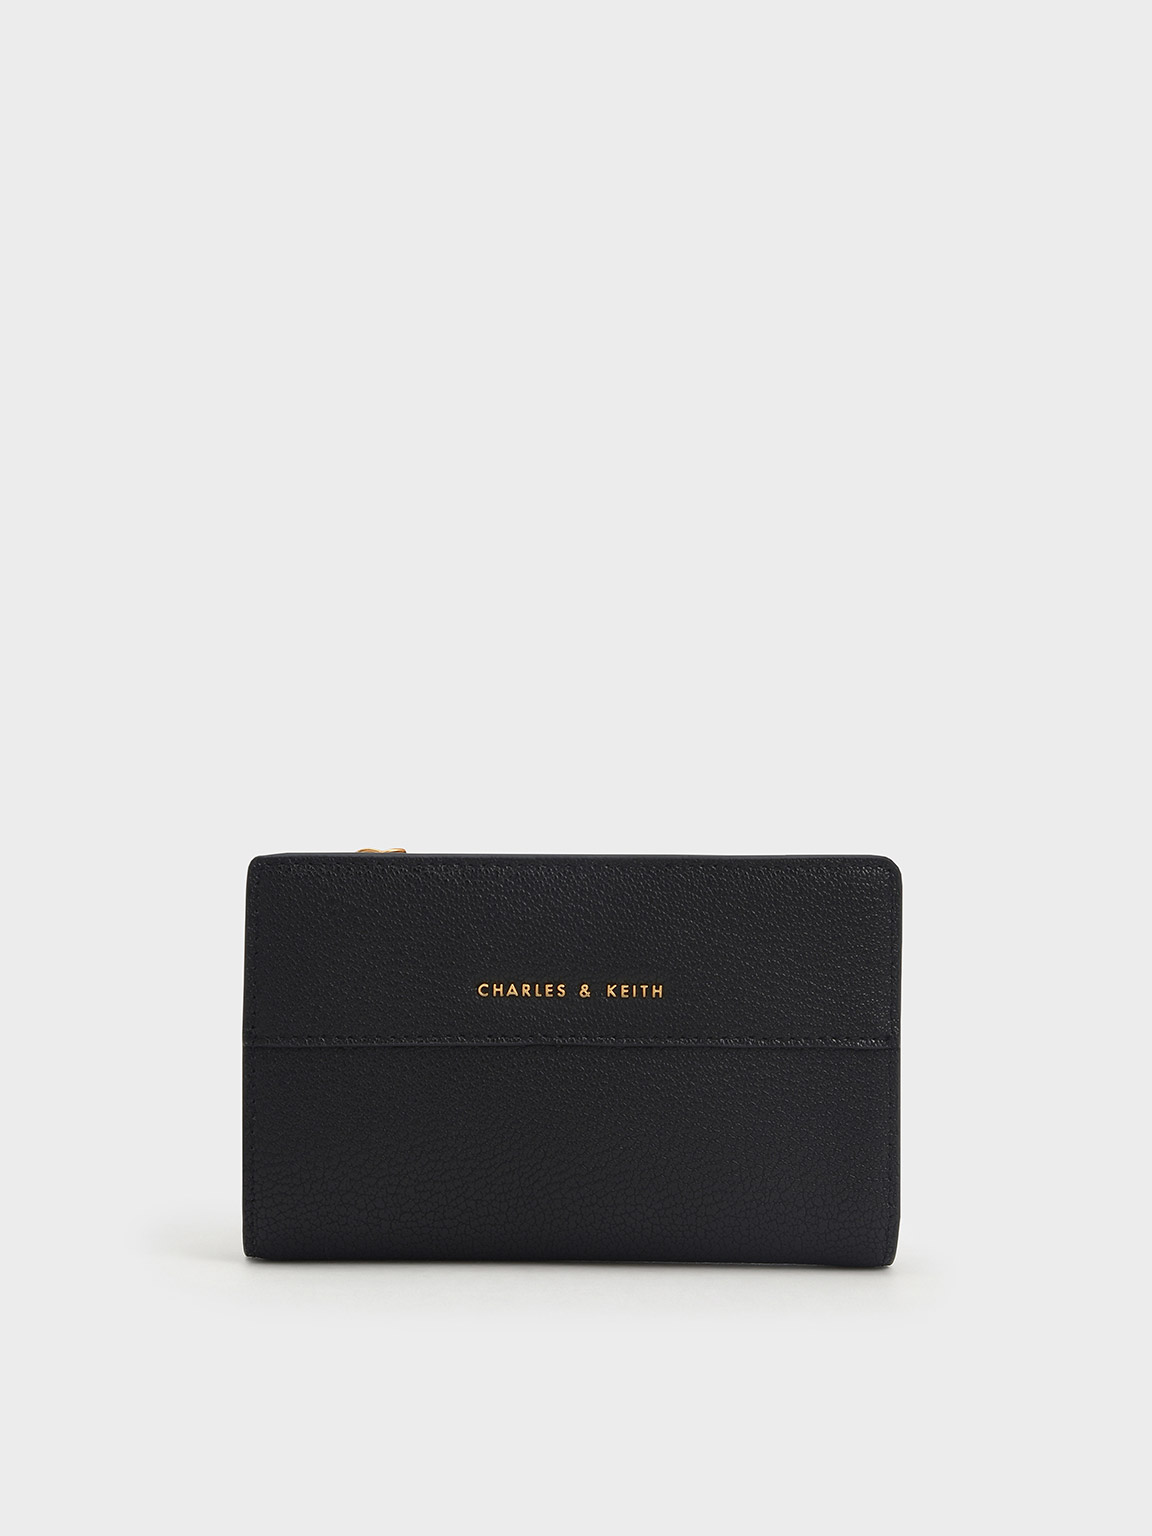 Charles & Keith - Women's Top Zip Short Wallet, Black, Xs